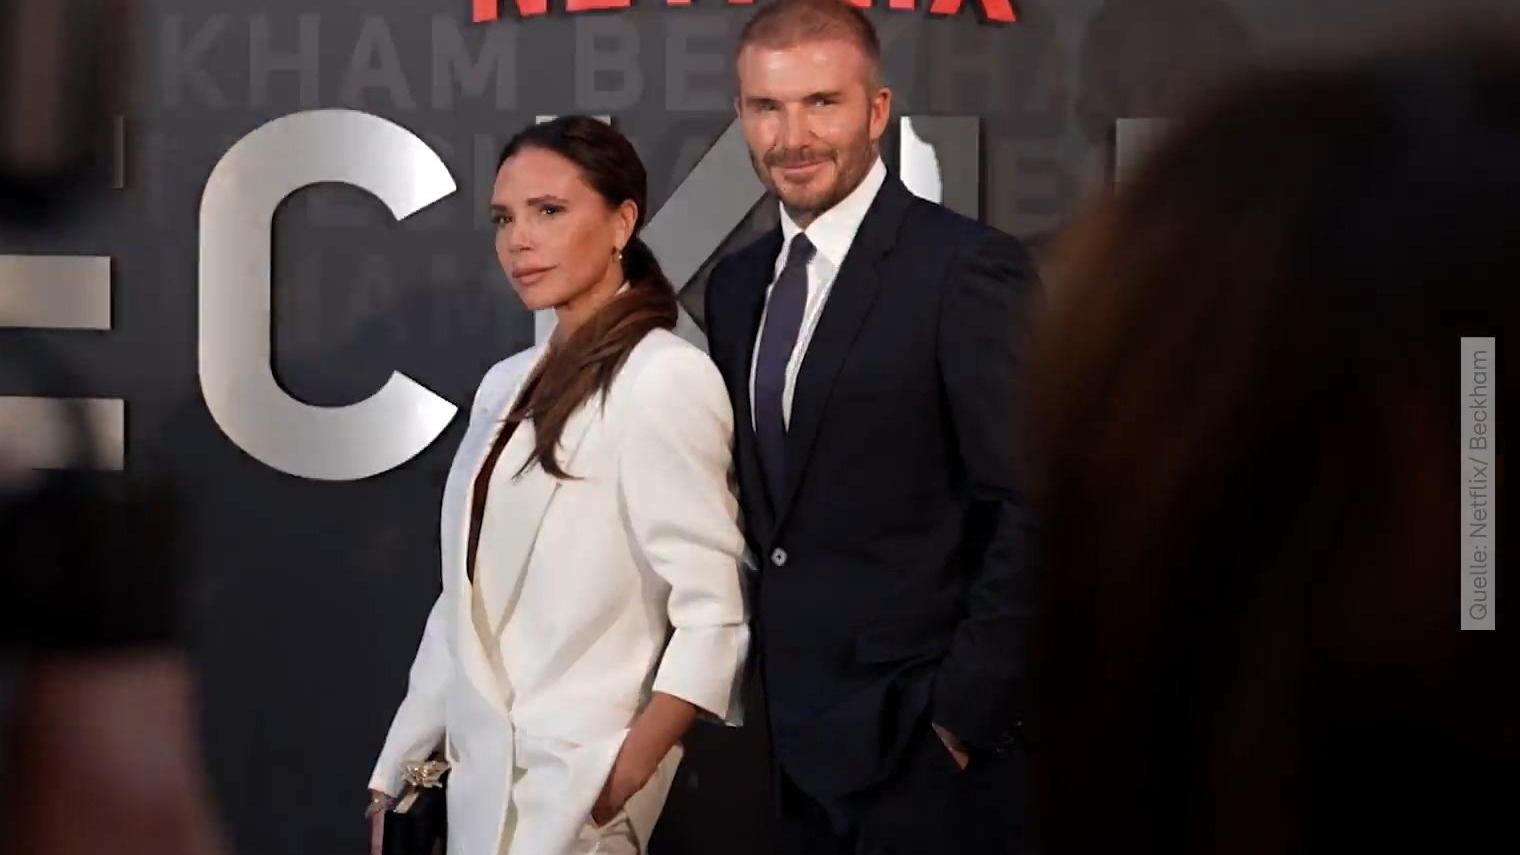 Beckhams break their silence over David's affair revelation in documentary